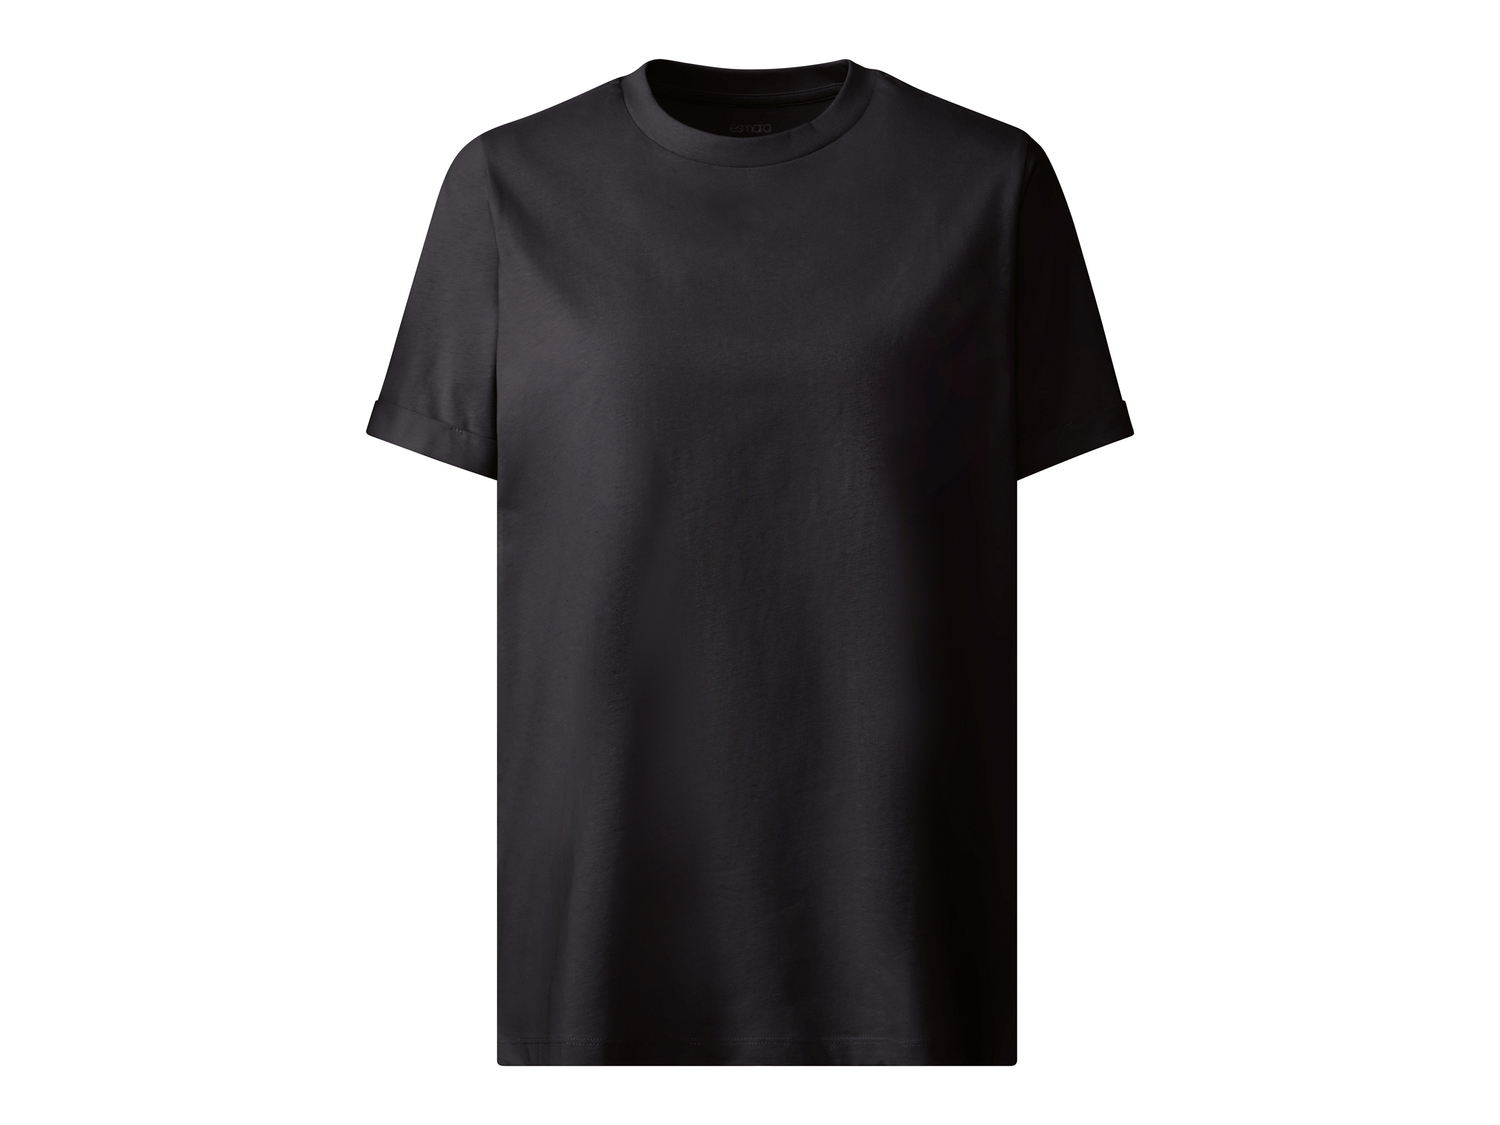 T-shirt lunga da donna Esmara, prezzo 6.99 &#8364; 
Misure: S-L
Taglie disponibili

Caratteristiche

- ...